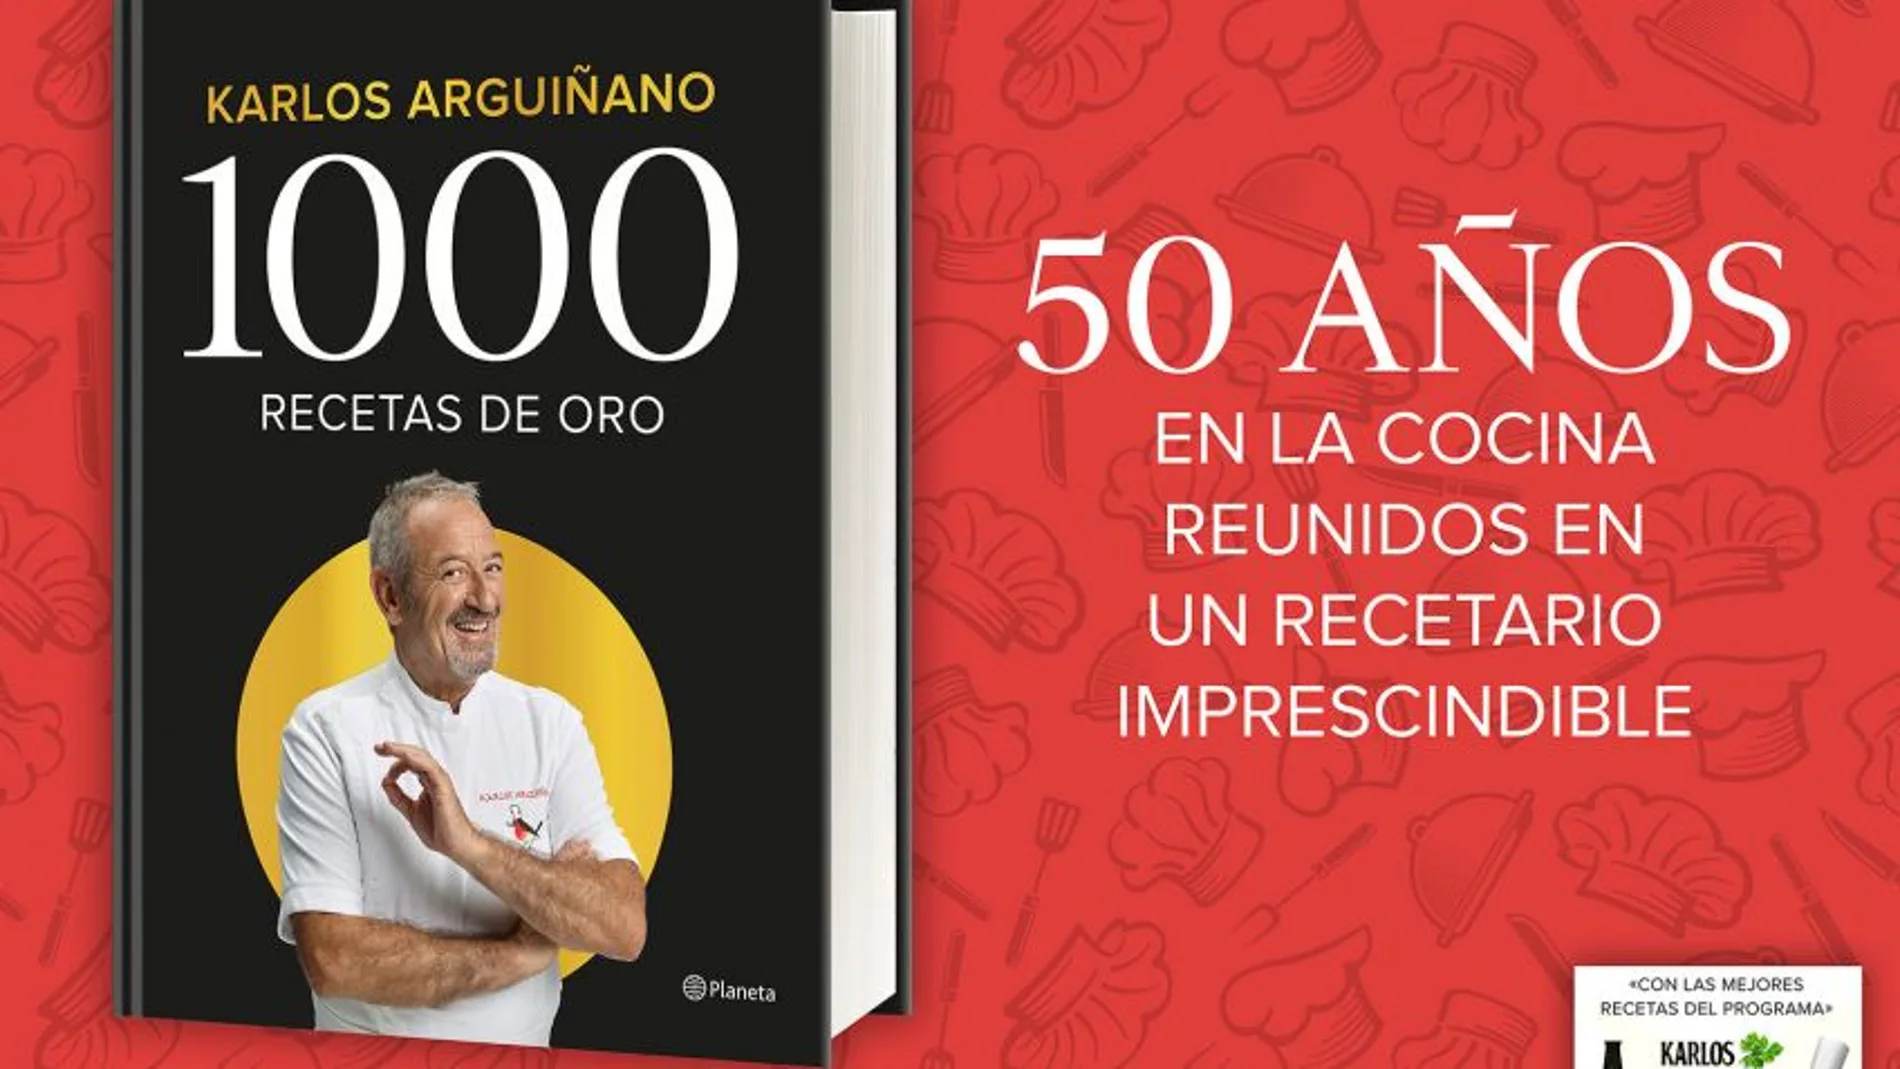 1000 Recetas de oro ¡el nuevo libro de Karlos Arguiñano ya a la venta! (ed. Planeta)